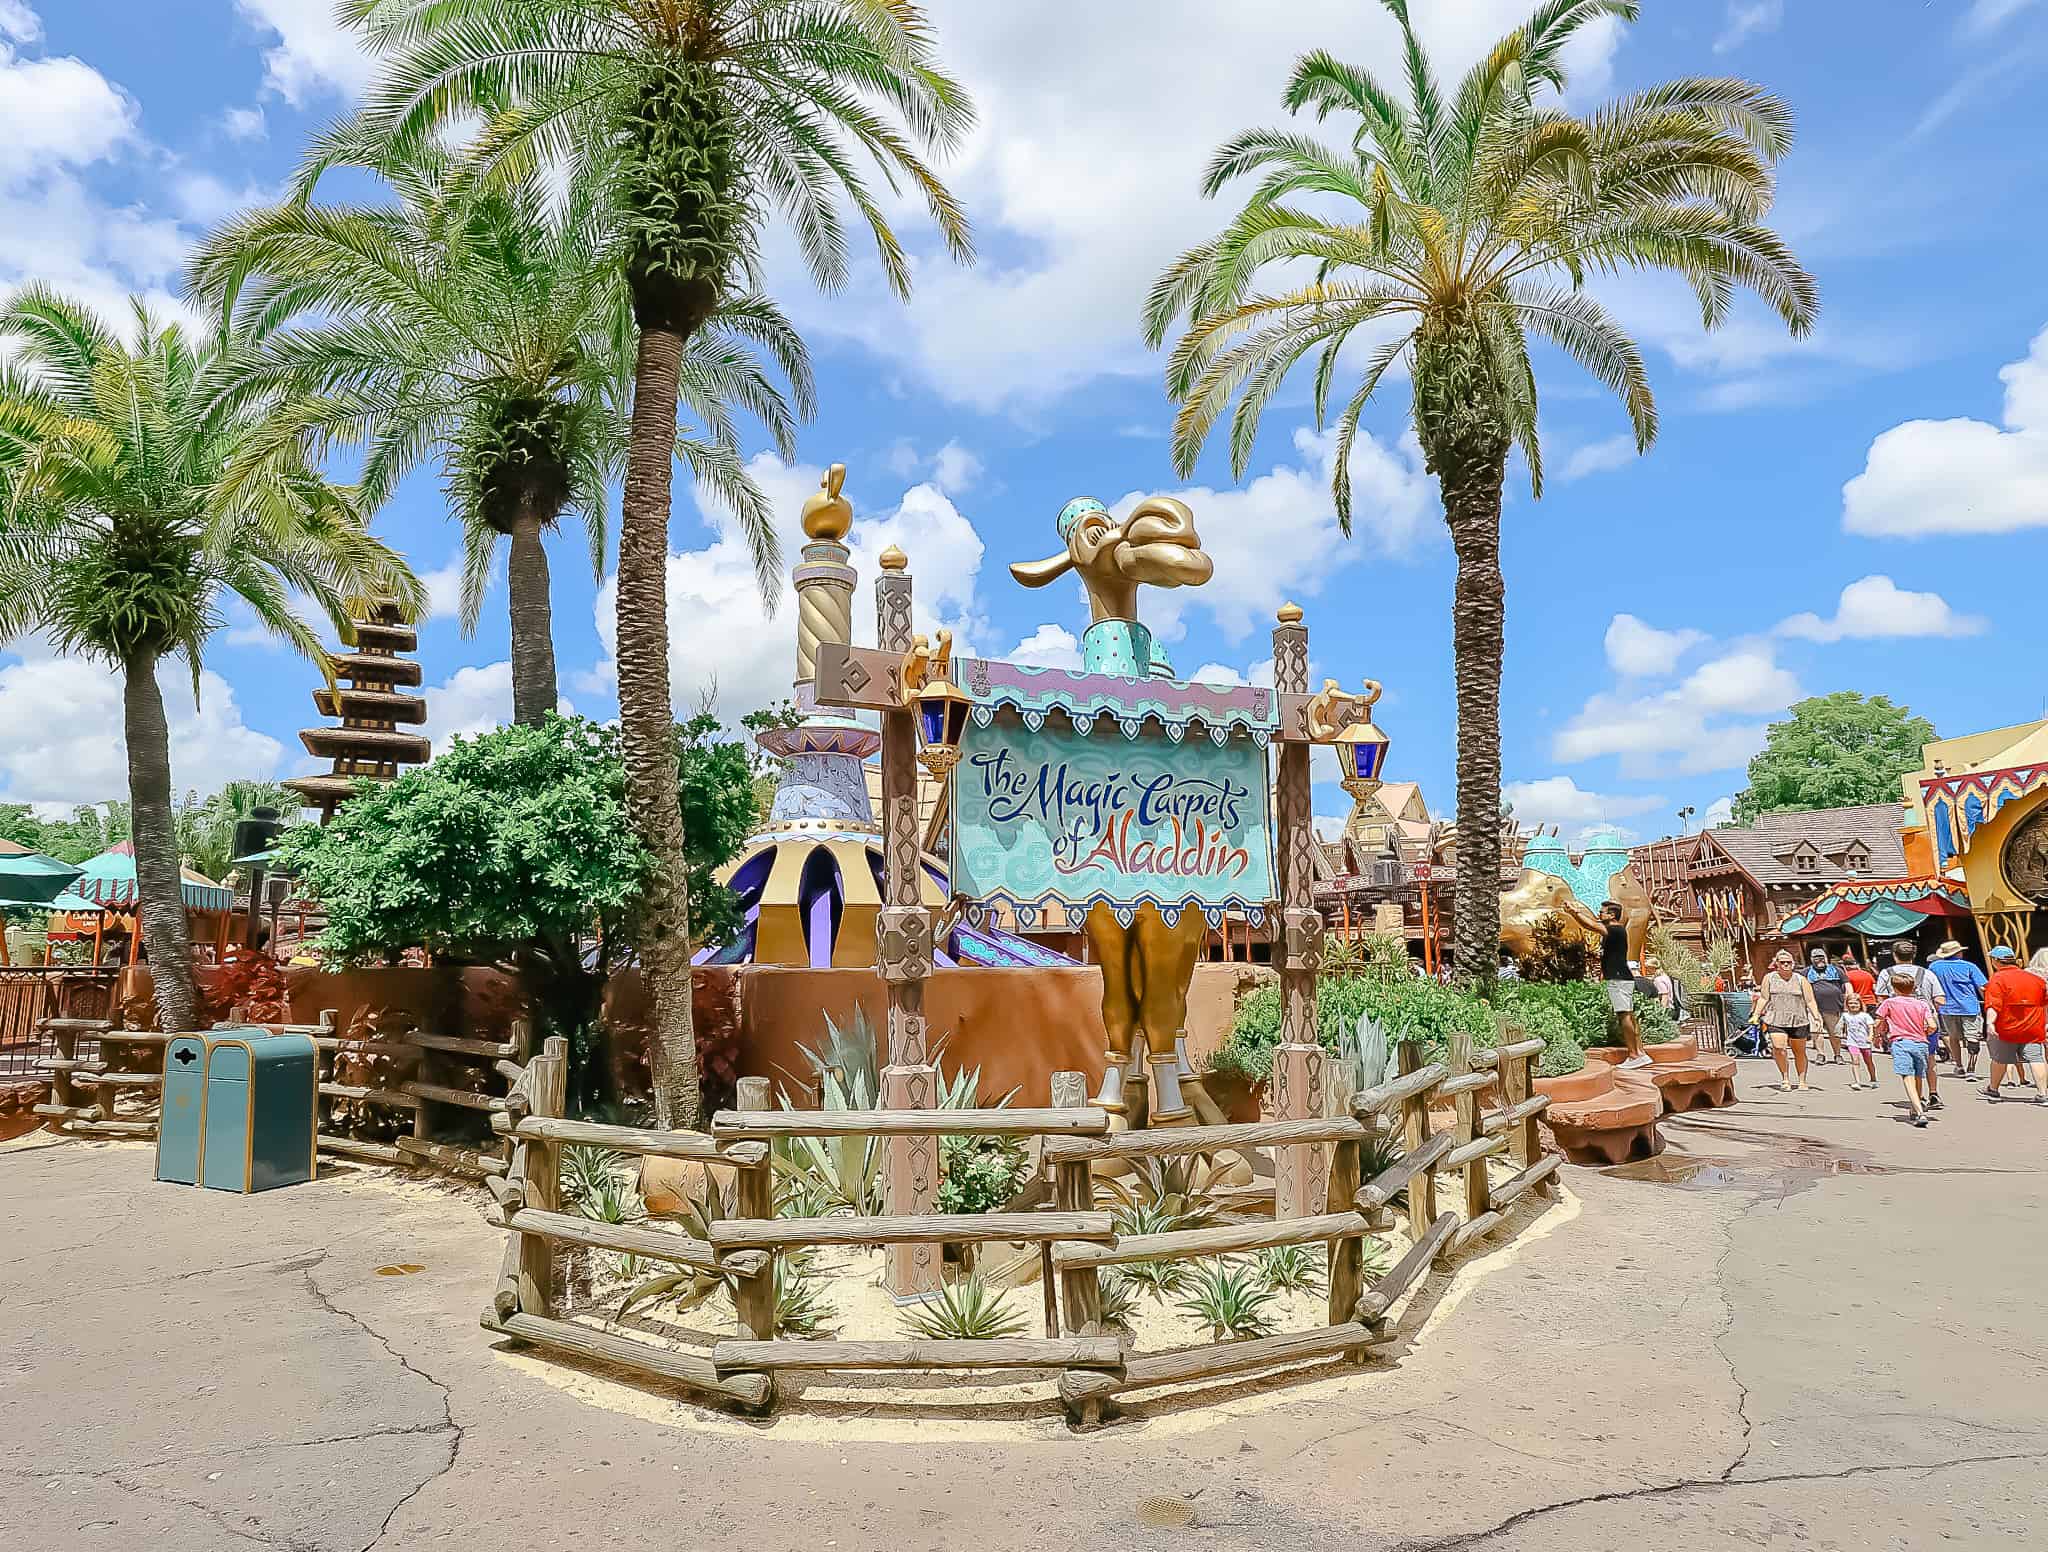 The Magic Carpets of Aladdin ride at Magic Kingdom 